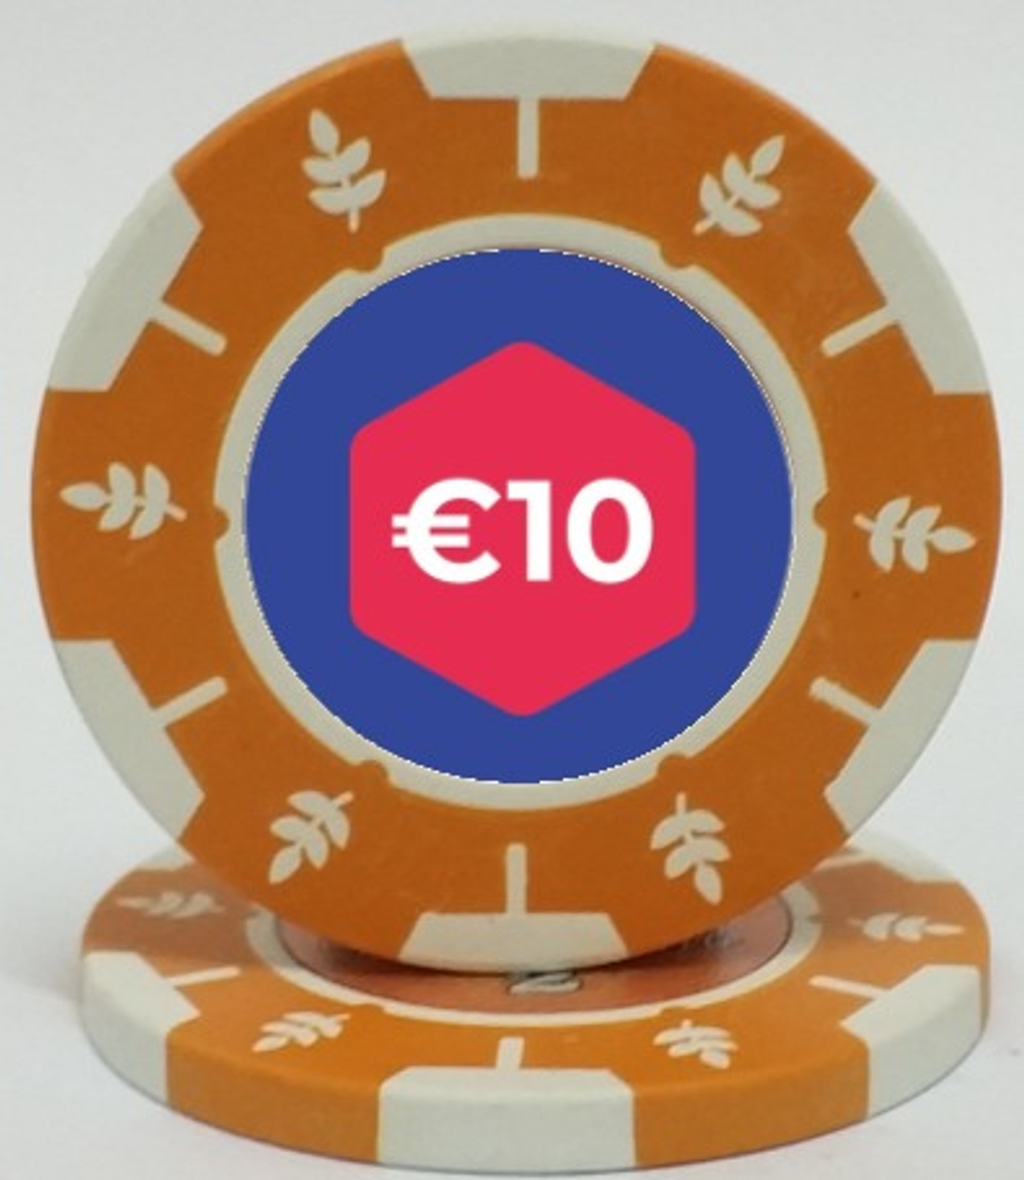 BIYU Pokerset 10 euro chip makkelijk en goedkoop huren bij BIYU